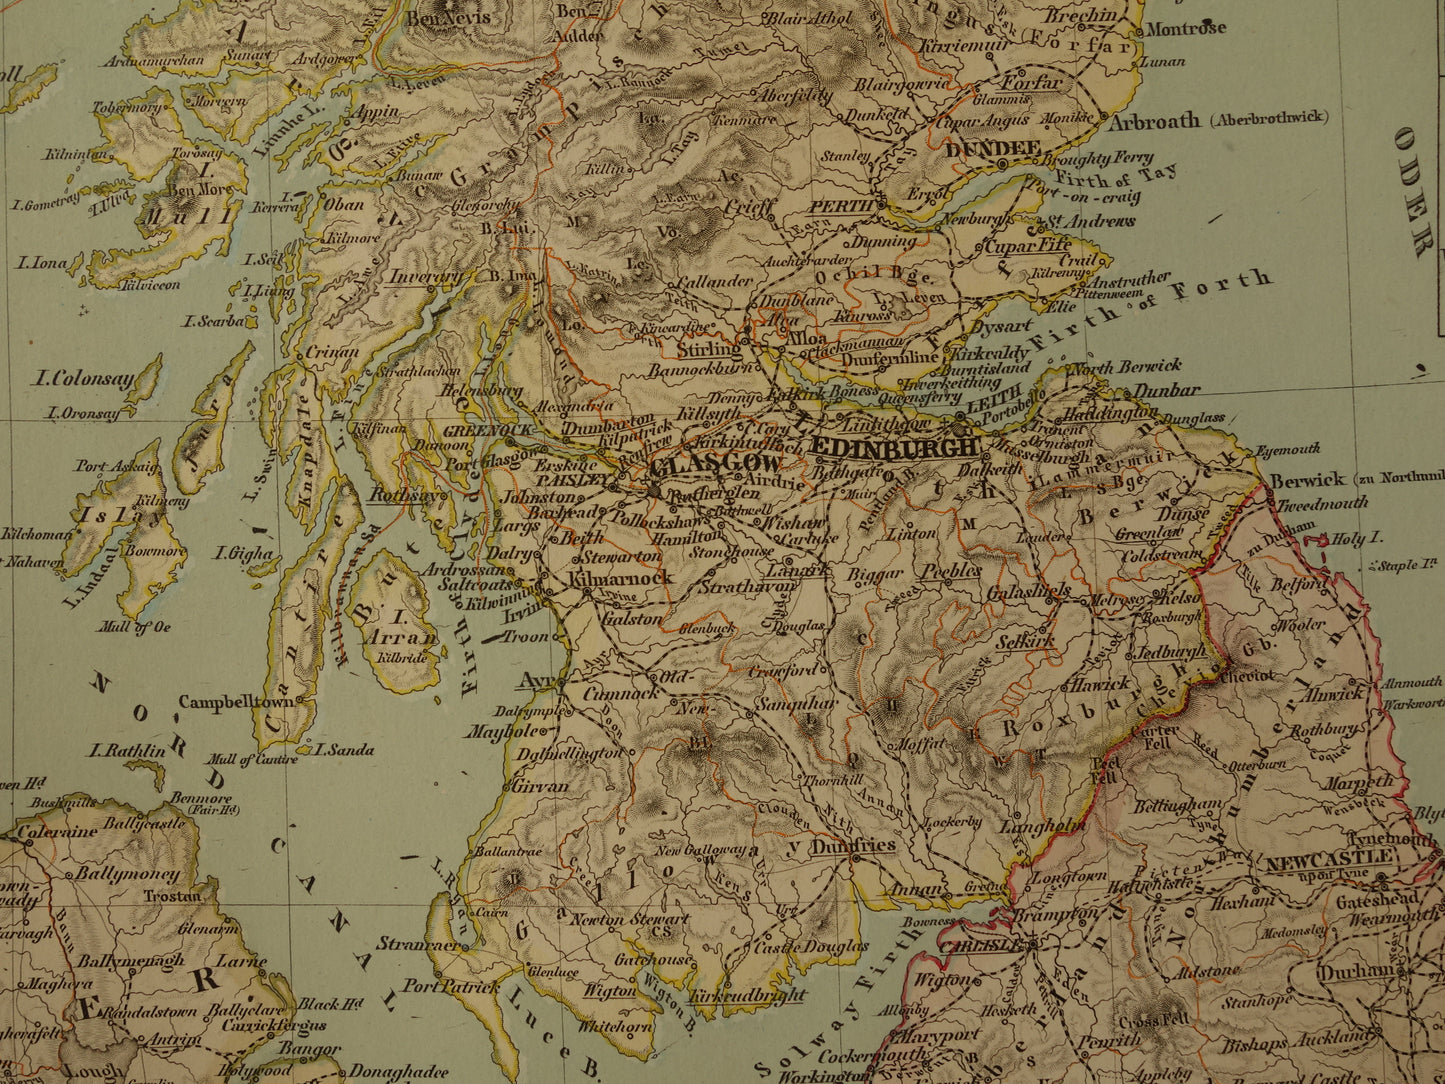 Grote landkaart van Engeland Wales Schotland en Ierland in 1855 originele antieke kaart vintage poster met jaartal